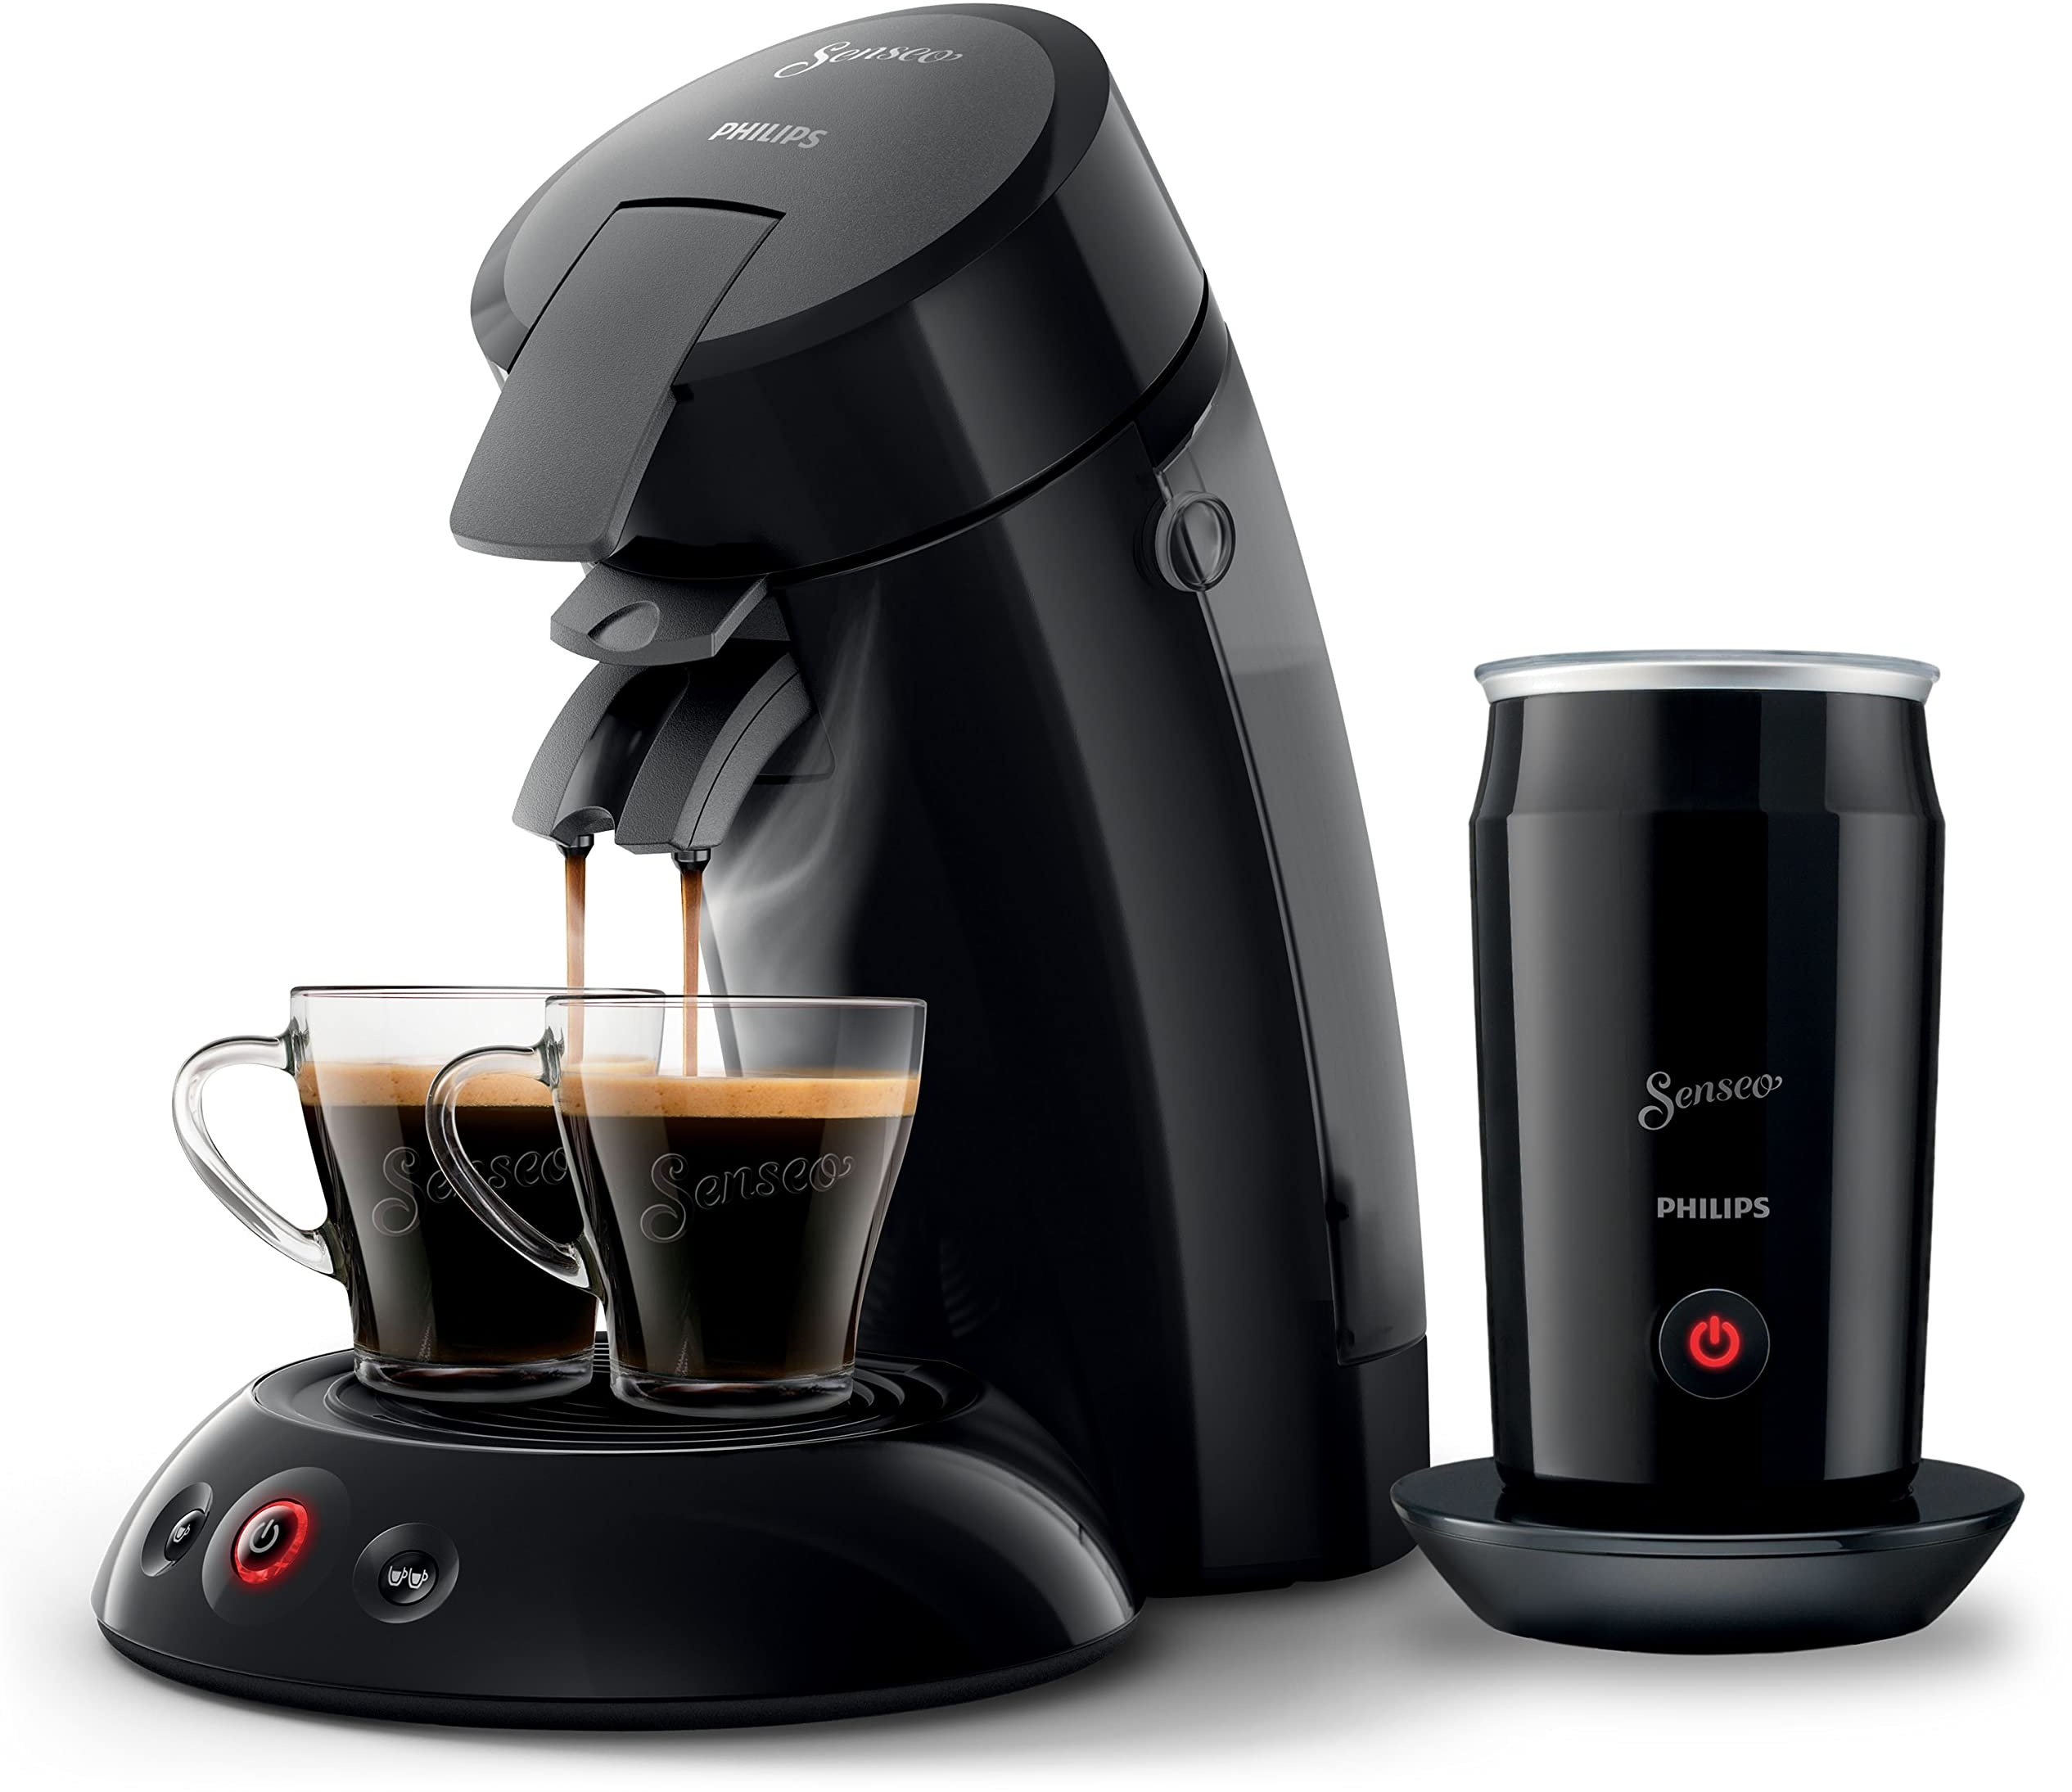 Philips Domestic Appliances Senseo Original Kaffeepadmaschine Mit Milchaufschäumer - Kaffee Boost Und Crema Plus Technologie, 0.7 Liters, Schwarz, (HD6553/65)